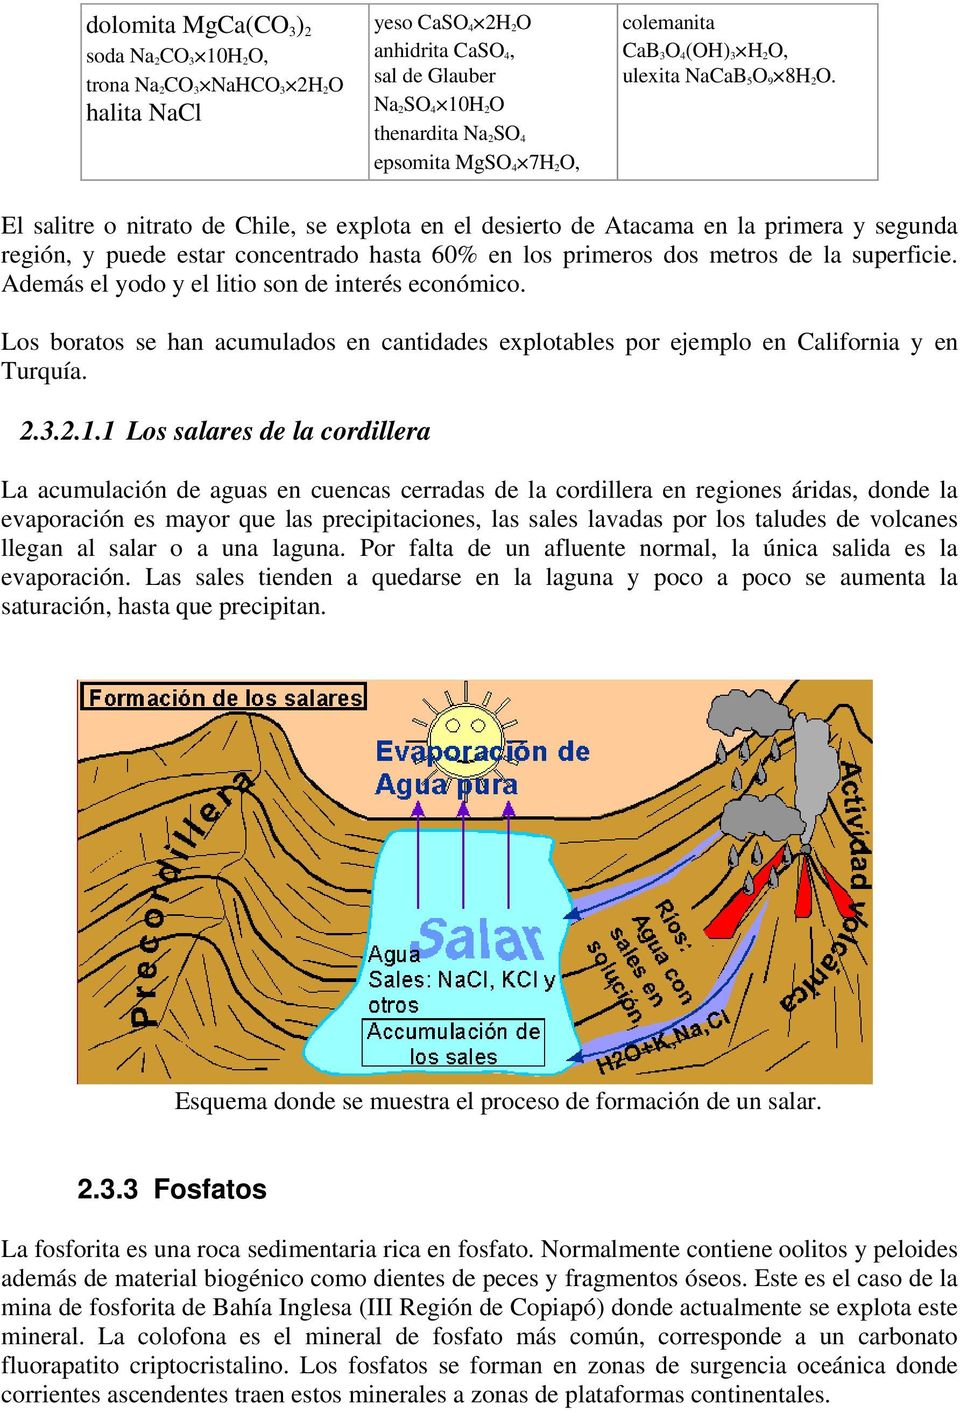 El salitre o nitrato de Chile, se explota en el desierto de Atacama en la primera y segunda región, y puede estar concentrado hasta 60% en los primeros dos metros de la superficie.